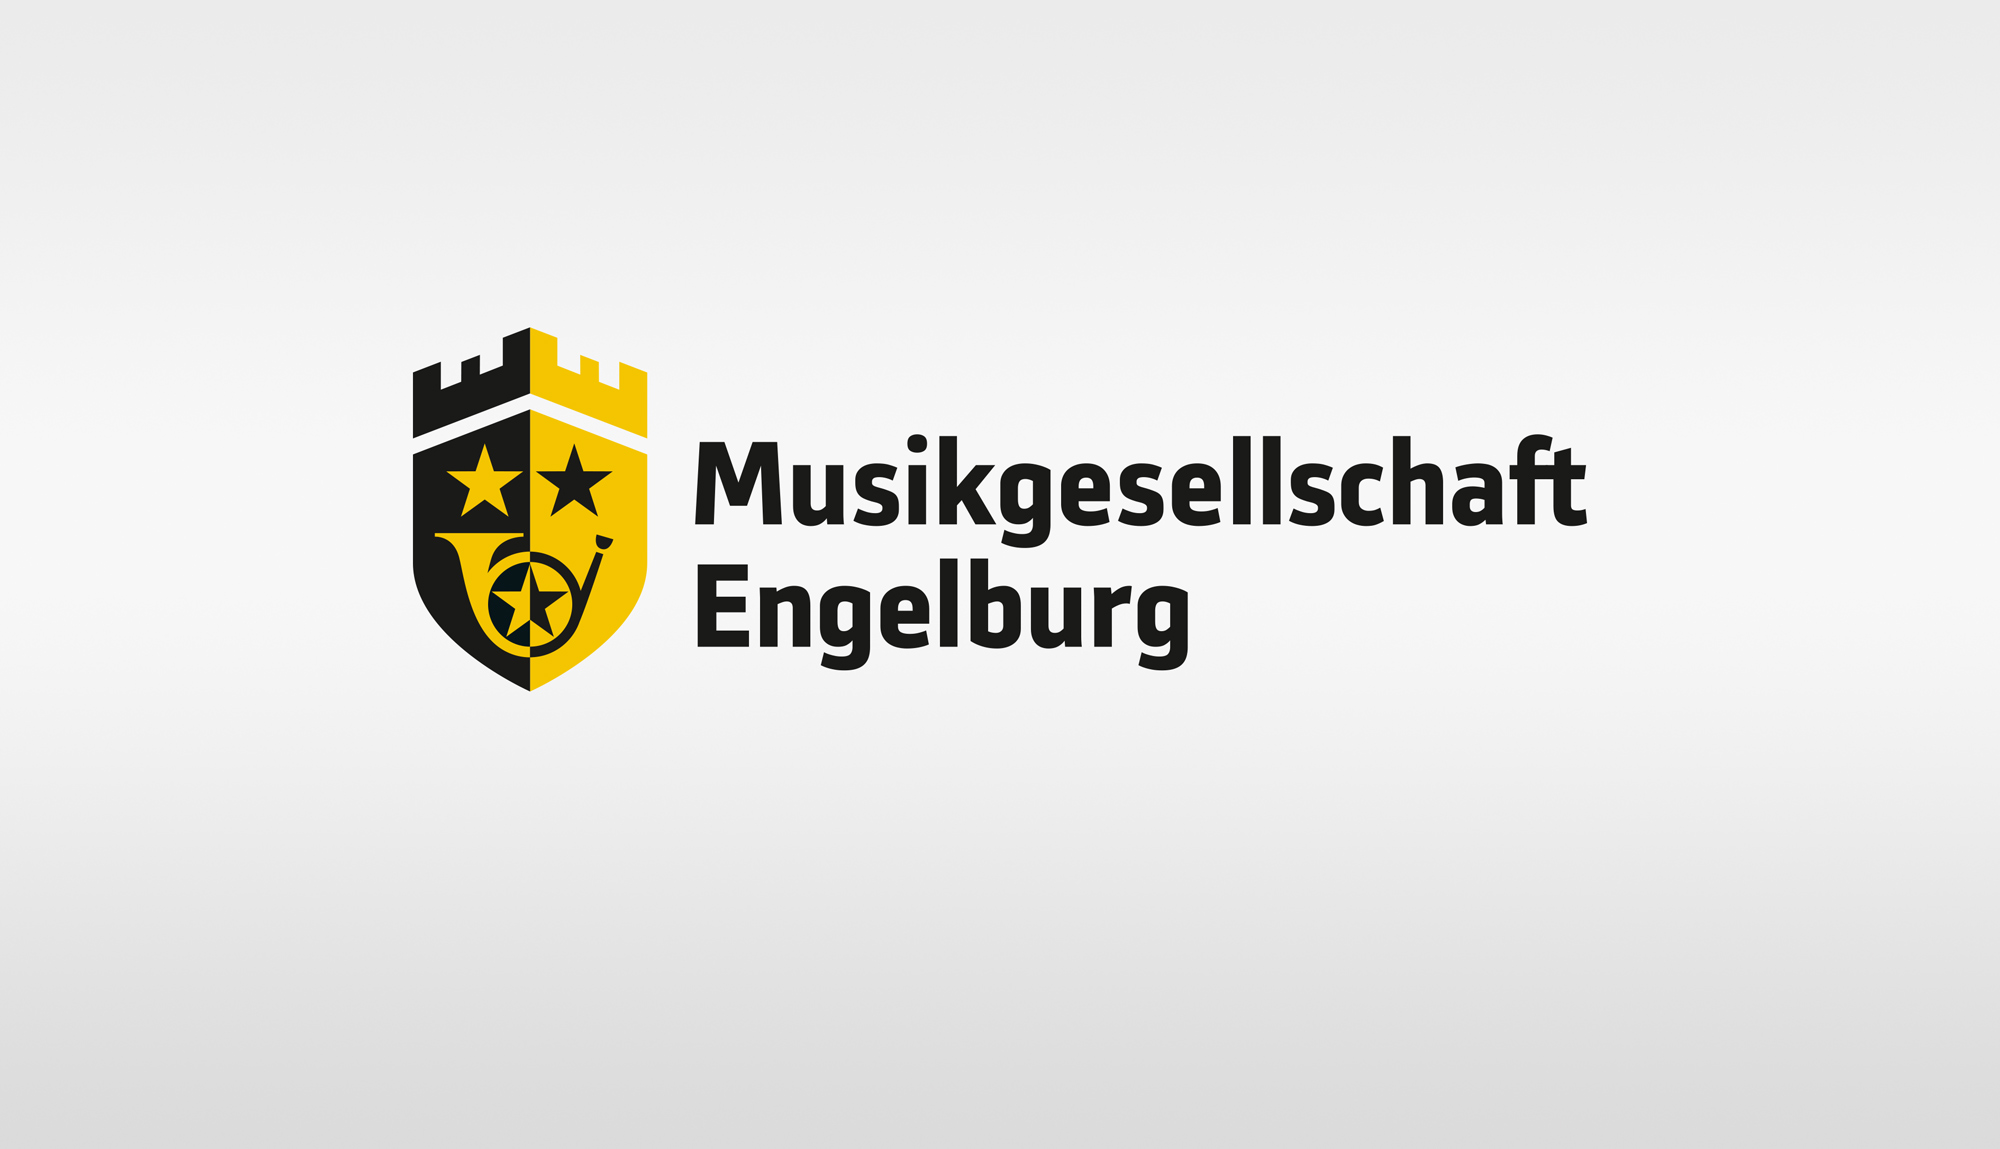 Musikgesellschaft Engelburg Logo variabel Medienvielfalt